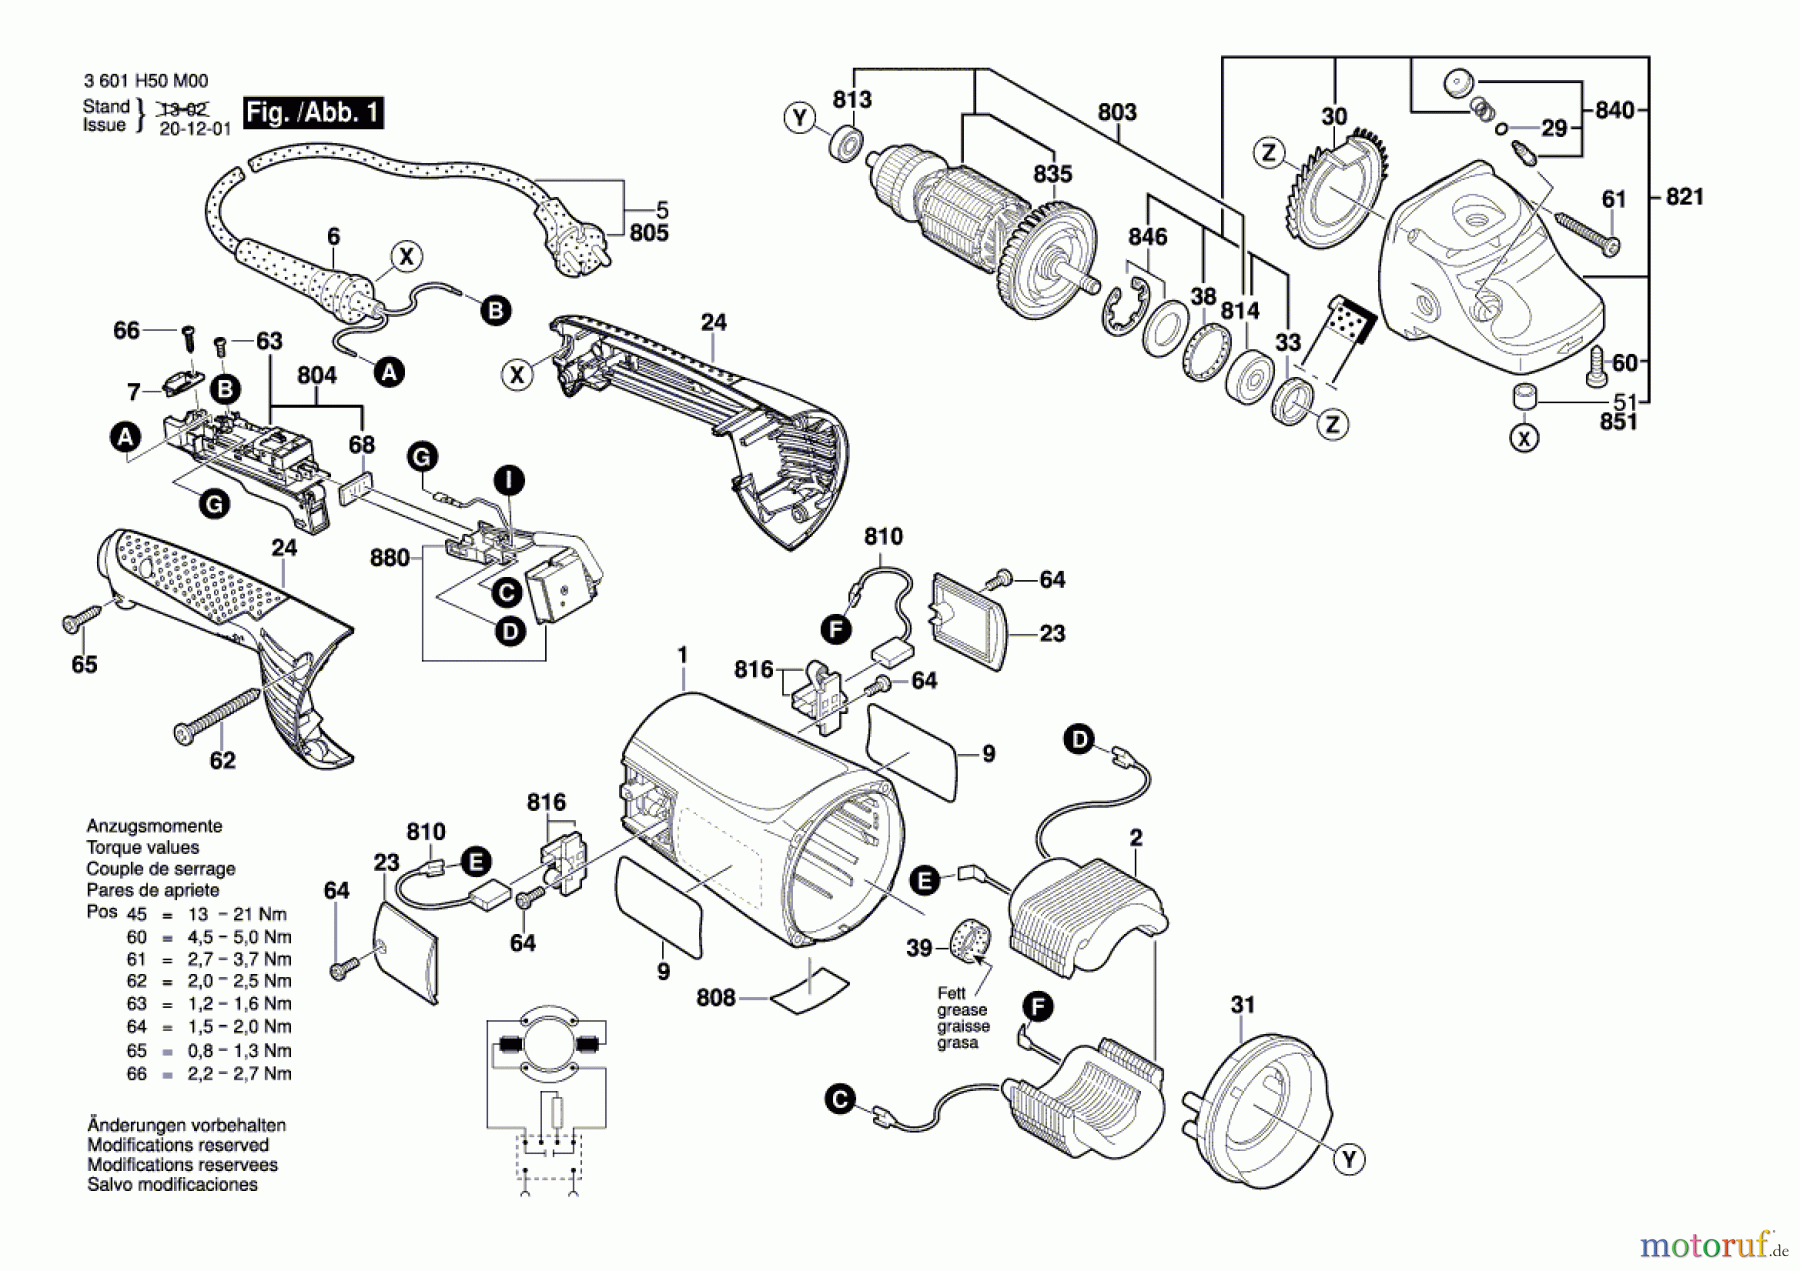  Bosch Werkzeug Winkelschleifer GWS 20-230JH Seite 1